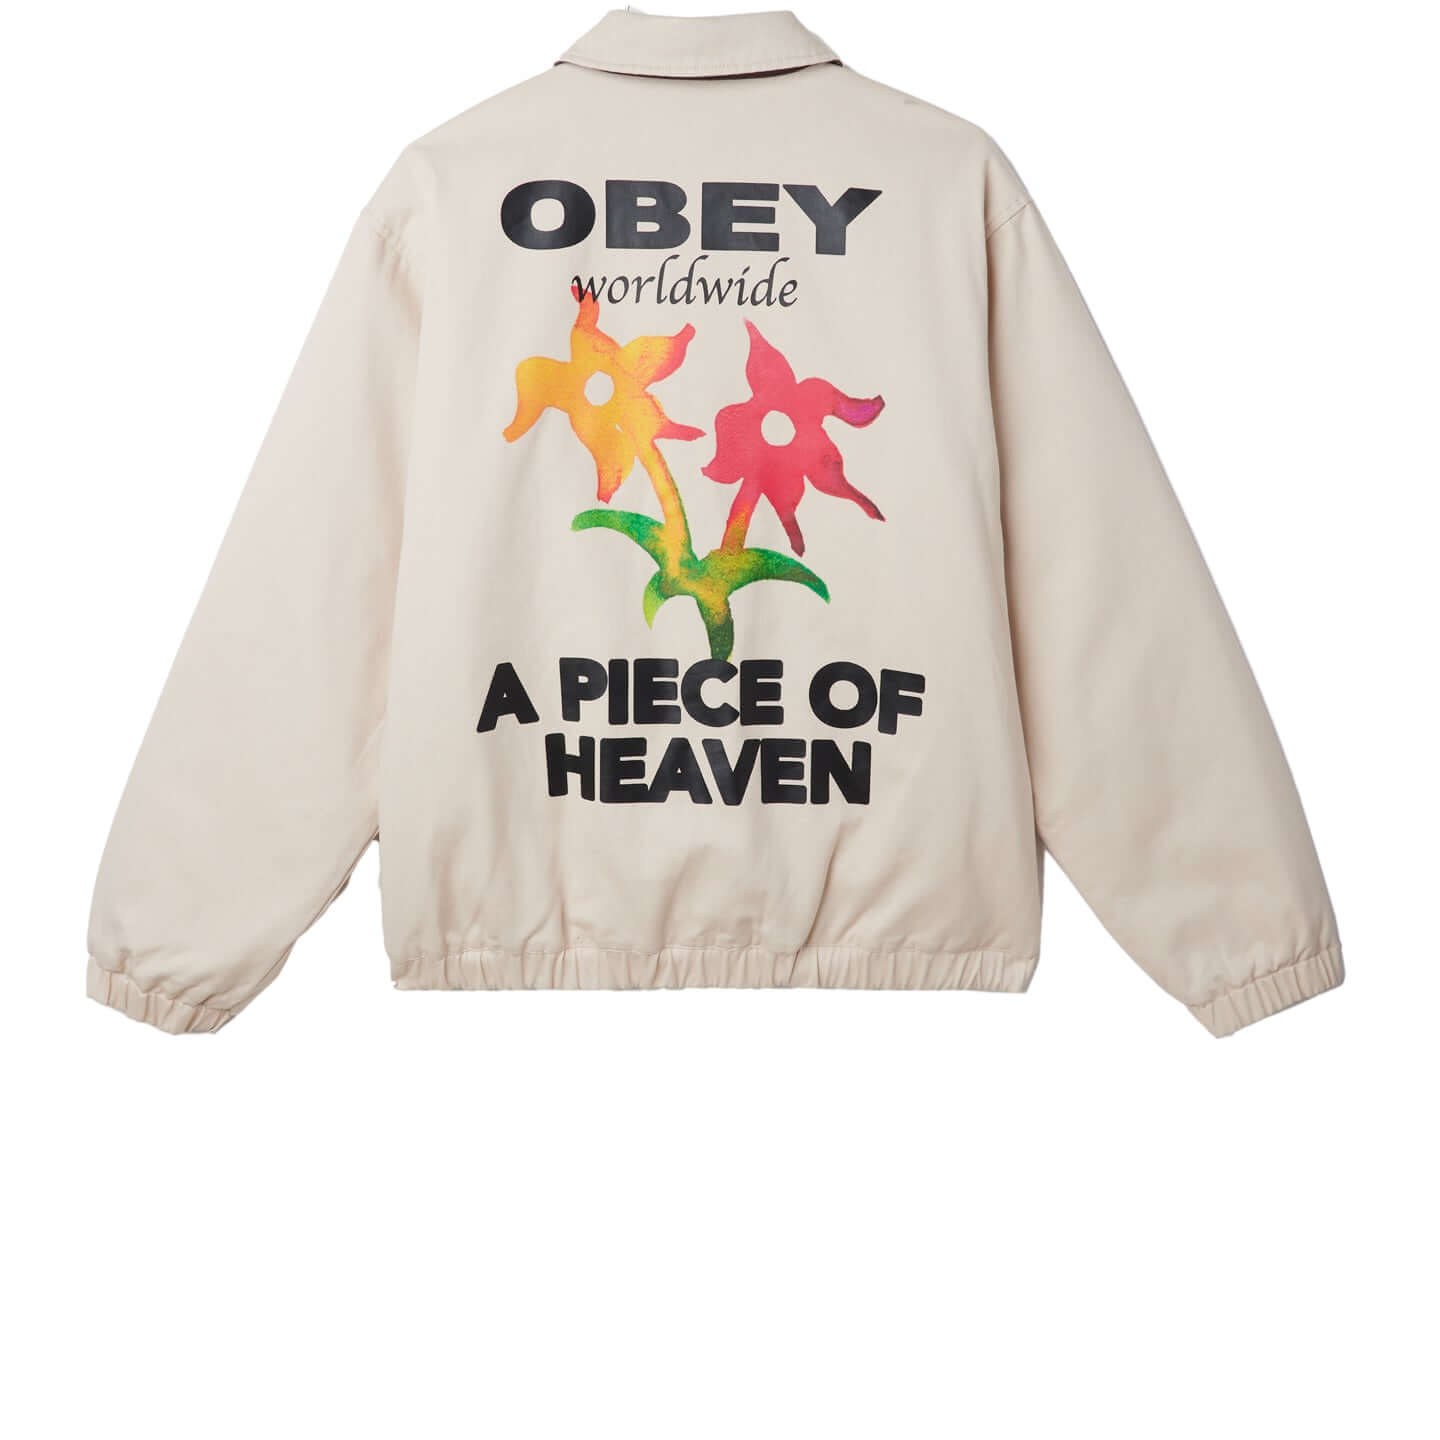 Order Jacket - Obey Clothing UK